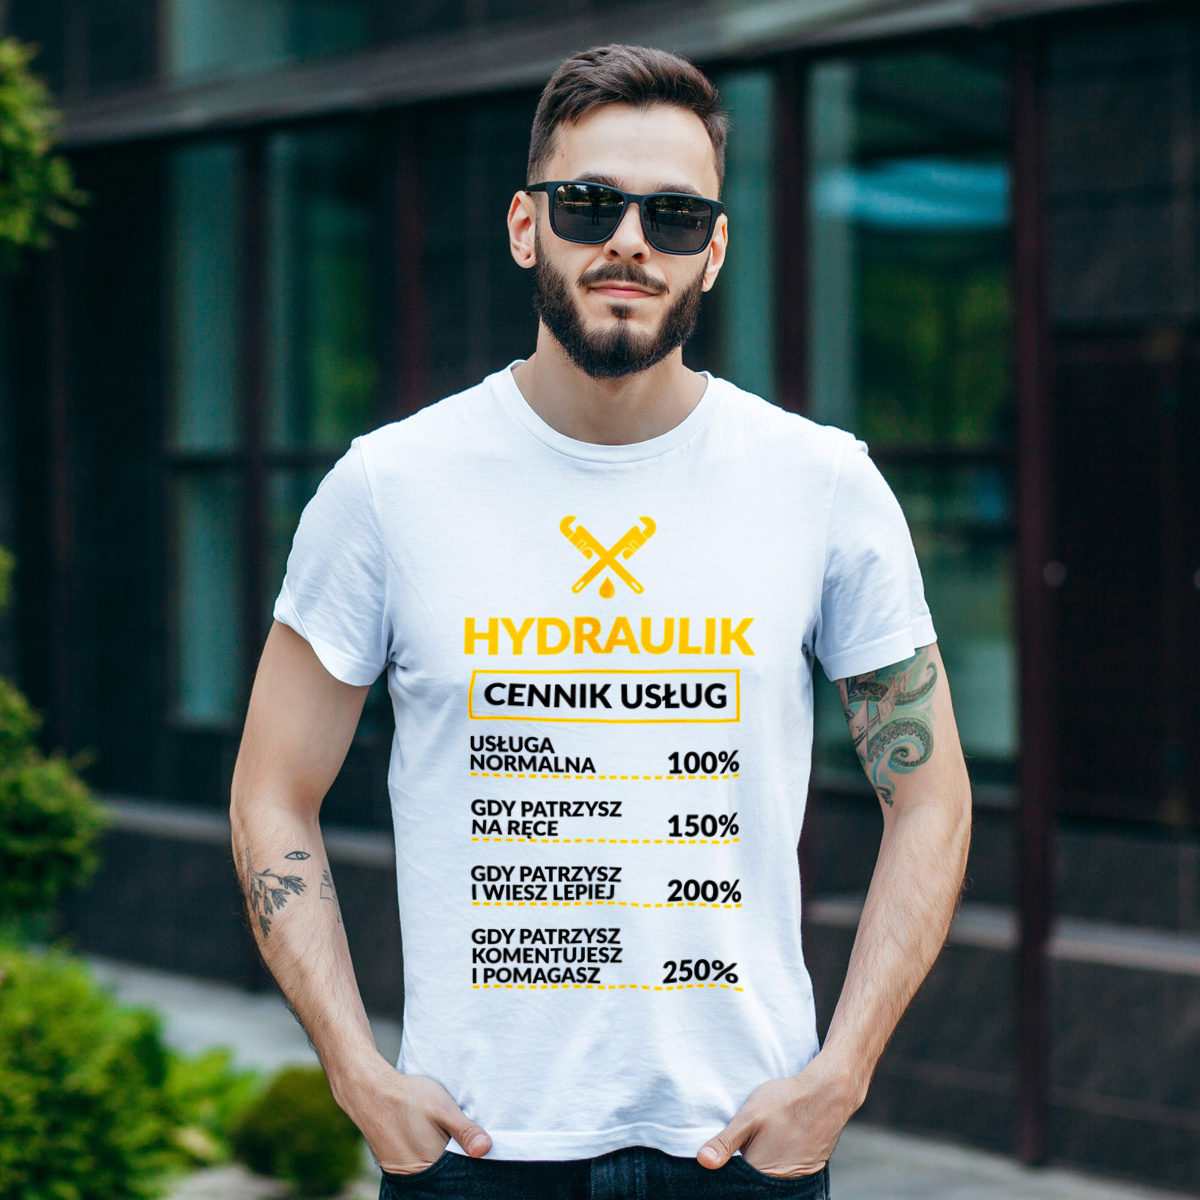 Hydraulik - Cennik Usług - Męska Koszulka Biała